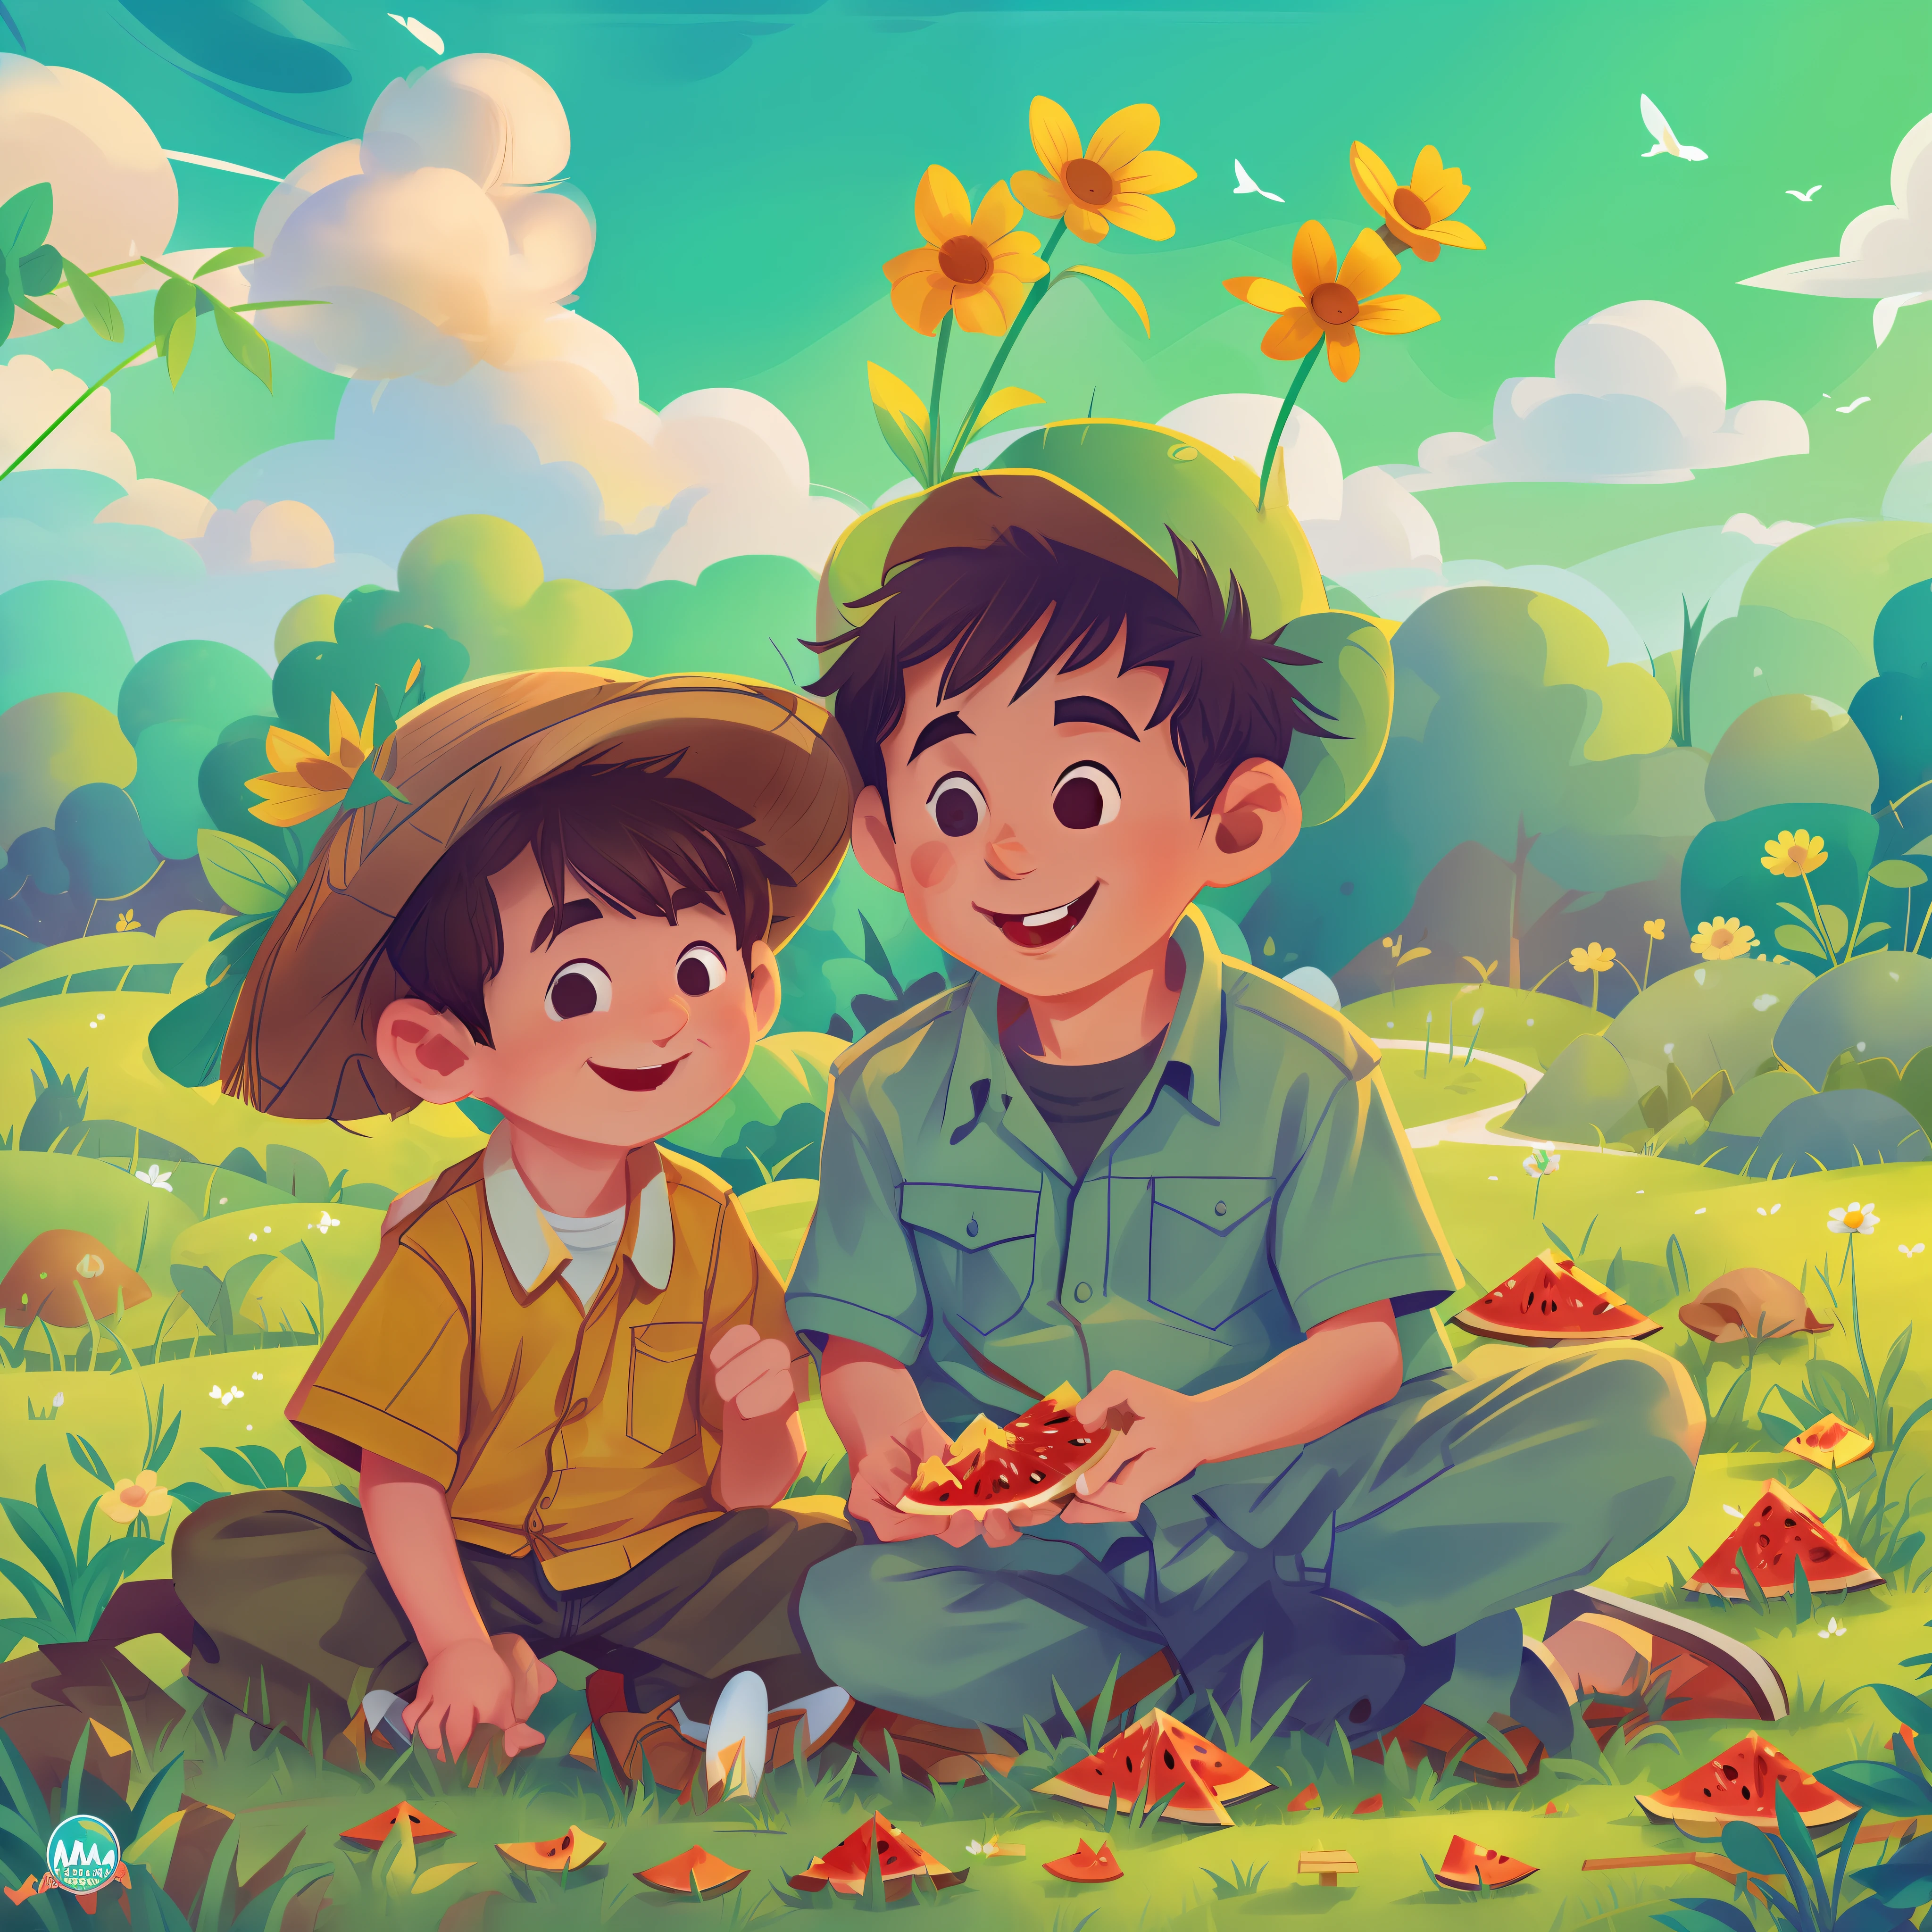 (傑作, 最好的品質), 小男孩和慈祥的老爺爺在院子裡吃西瓜, 微笑著, 精致的面部特征, 滿院植物, 草, 农村, 雲, 太陽, 乾淨的藍天, 兩個人開心的聊天, 夏天